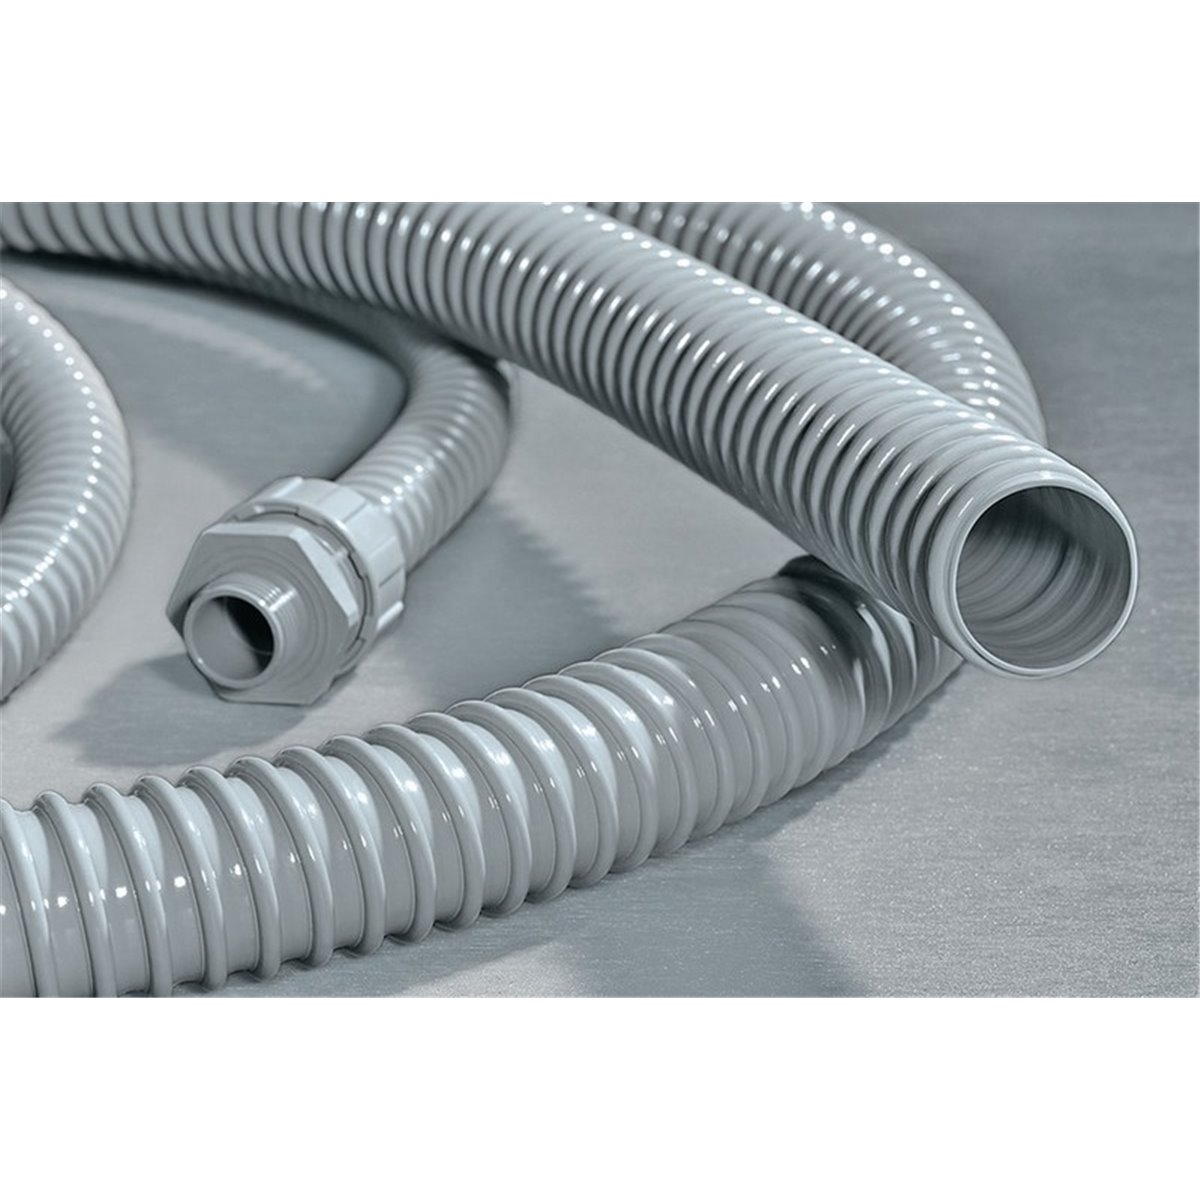 Spiral-reinforced PVC conduit PSR32-PVC-GY HellermannTyton, grey, 30m